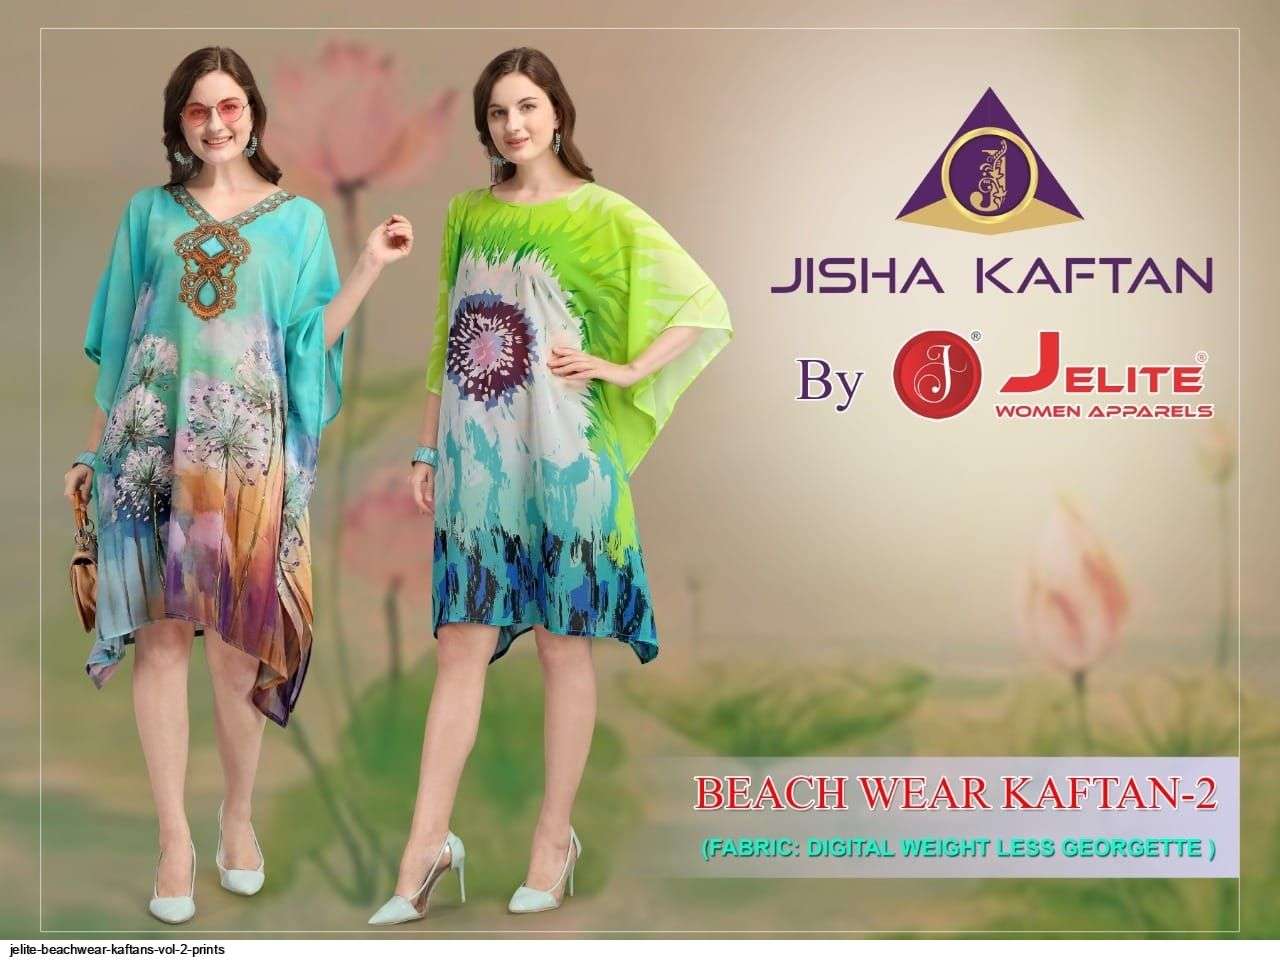 Jelite Beachwear Kaftan Vol 2 series 508-515 Weightless Georgette kaftan